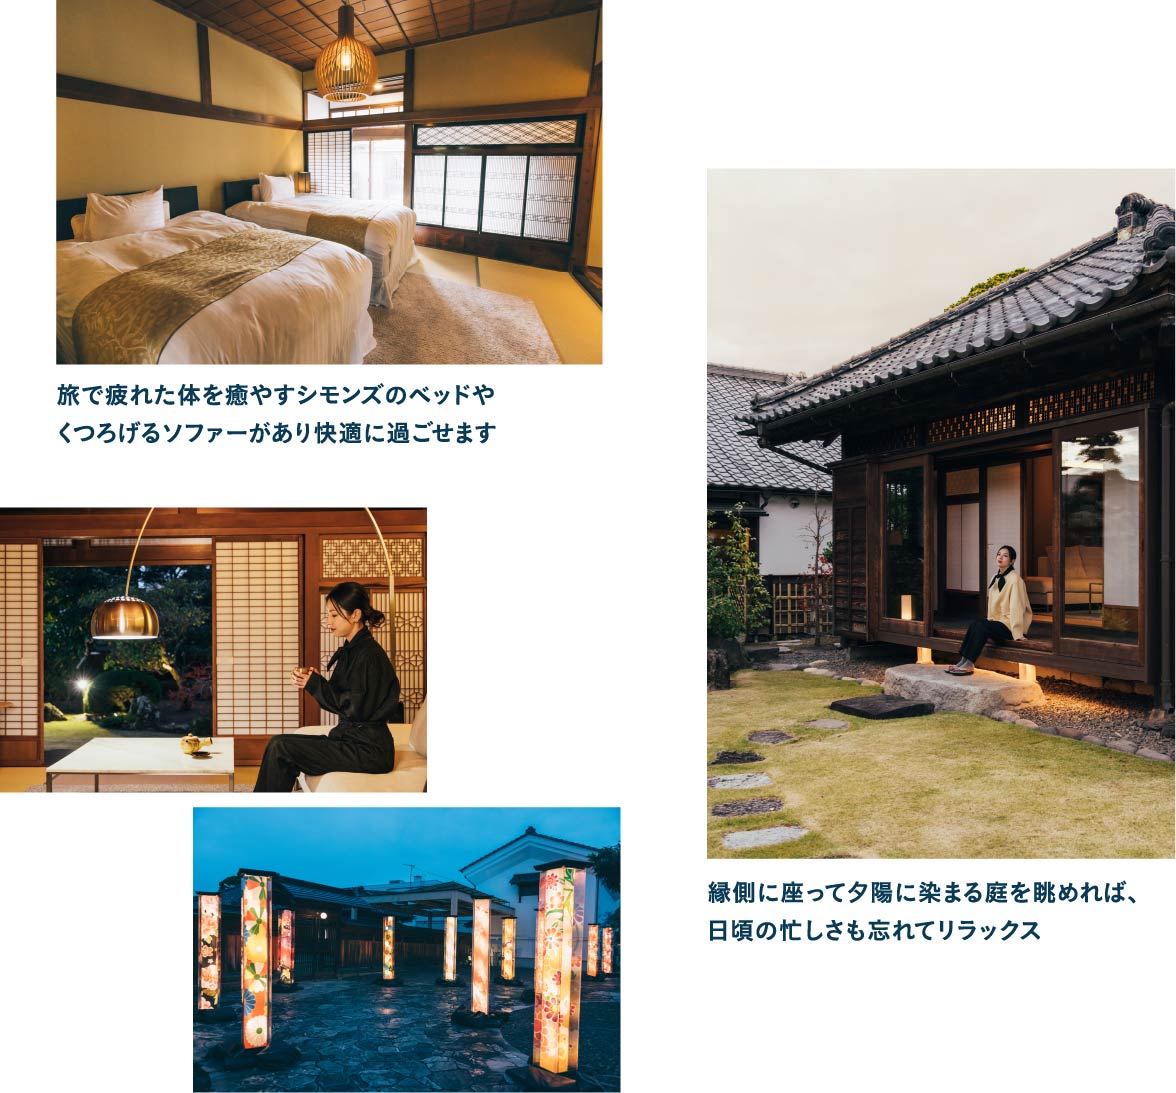 古民家をリノベーションした有形文化財ホテル「飯塚邸」に宿泊